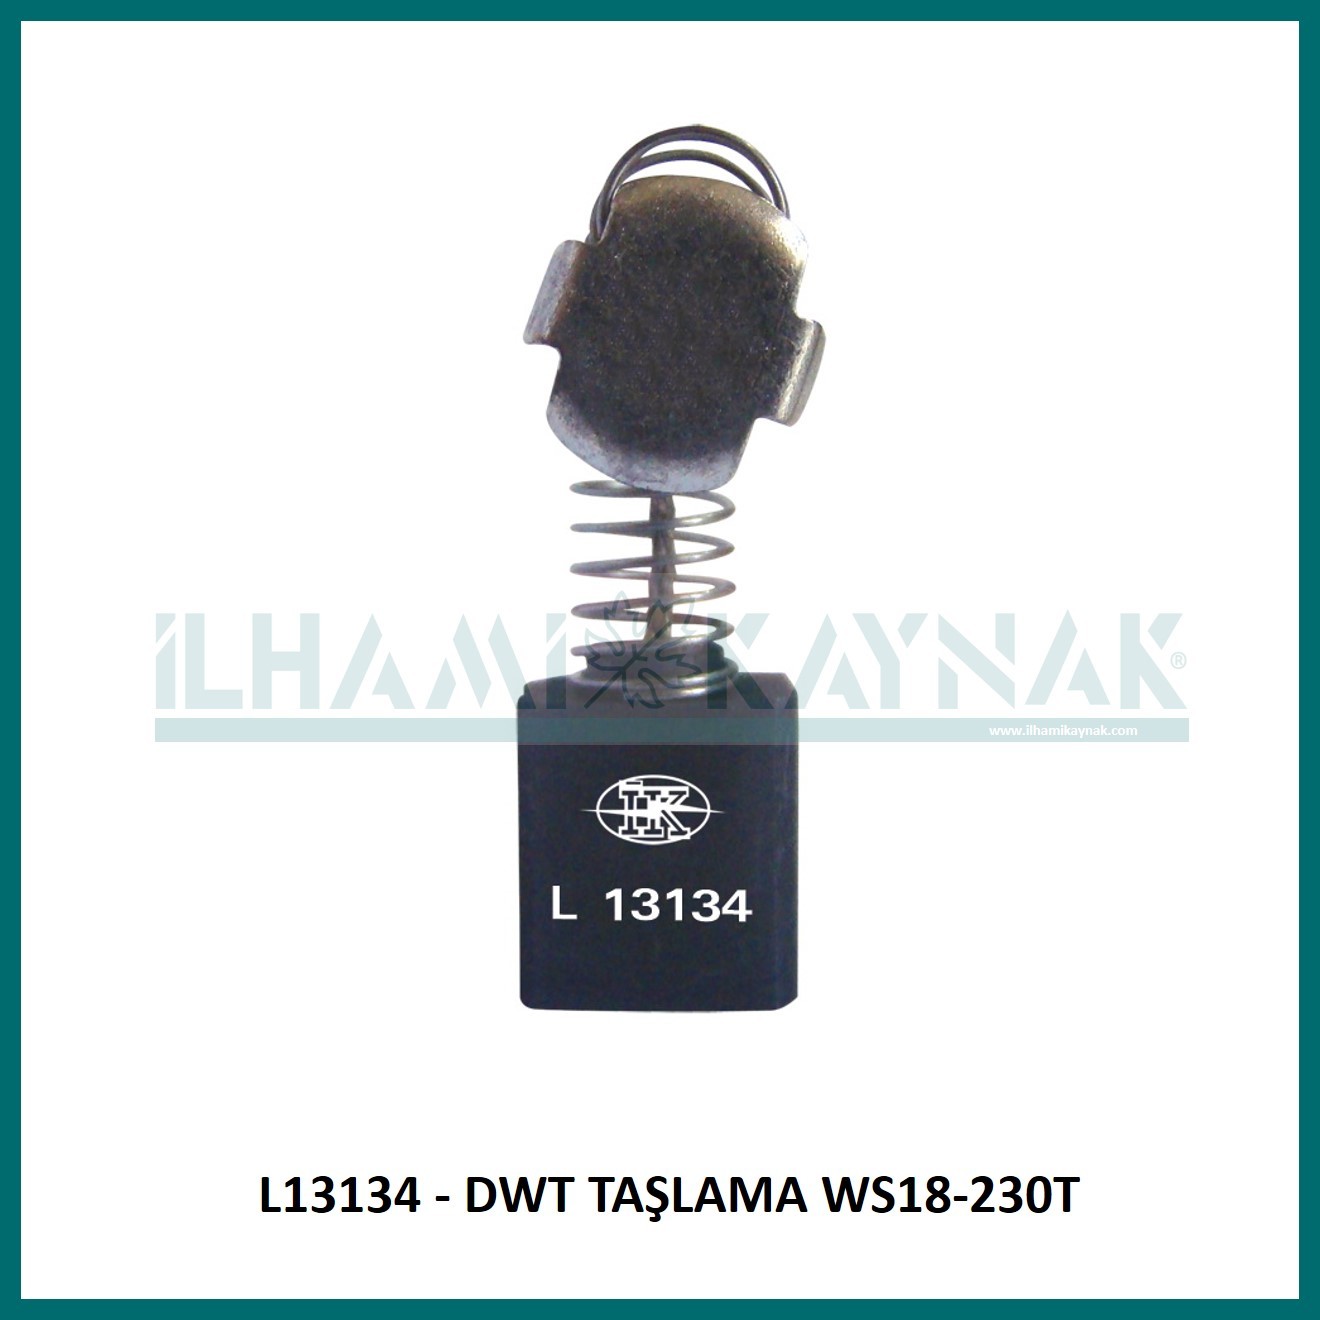 L13134 - DWT TAŞLAMA WS18-230T - 8*14*18 mm - 100 Adet